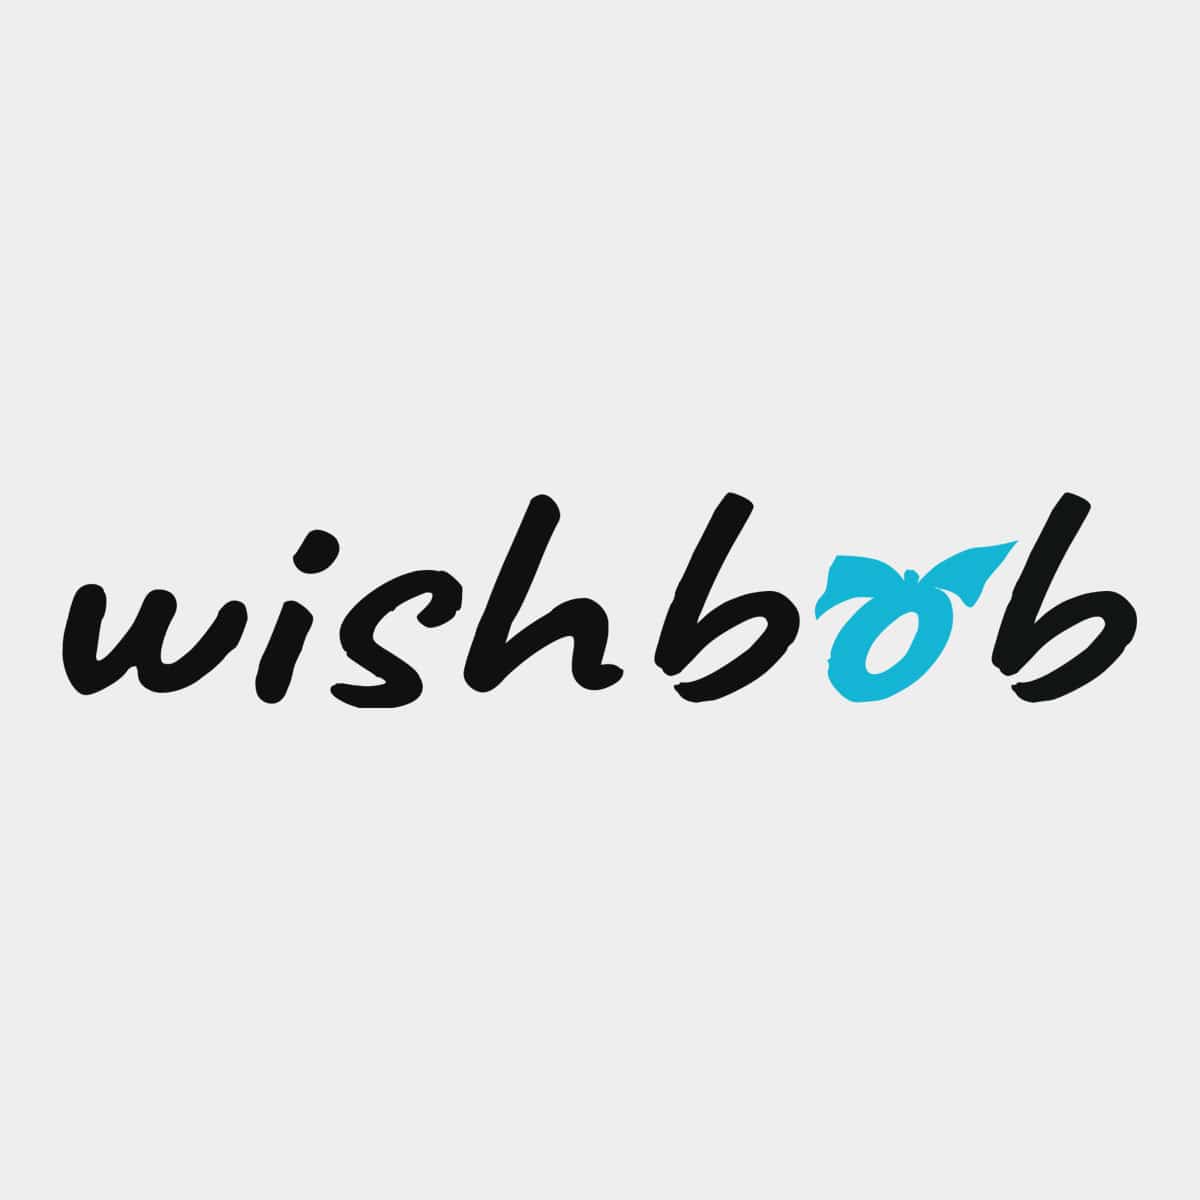 (c) Wishbob.com